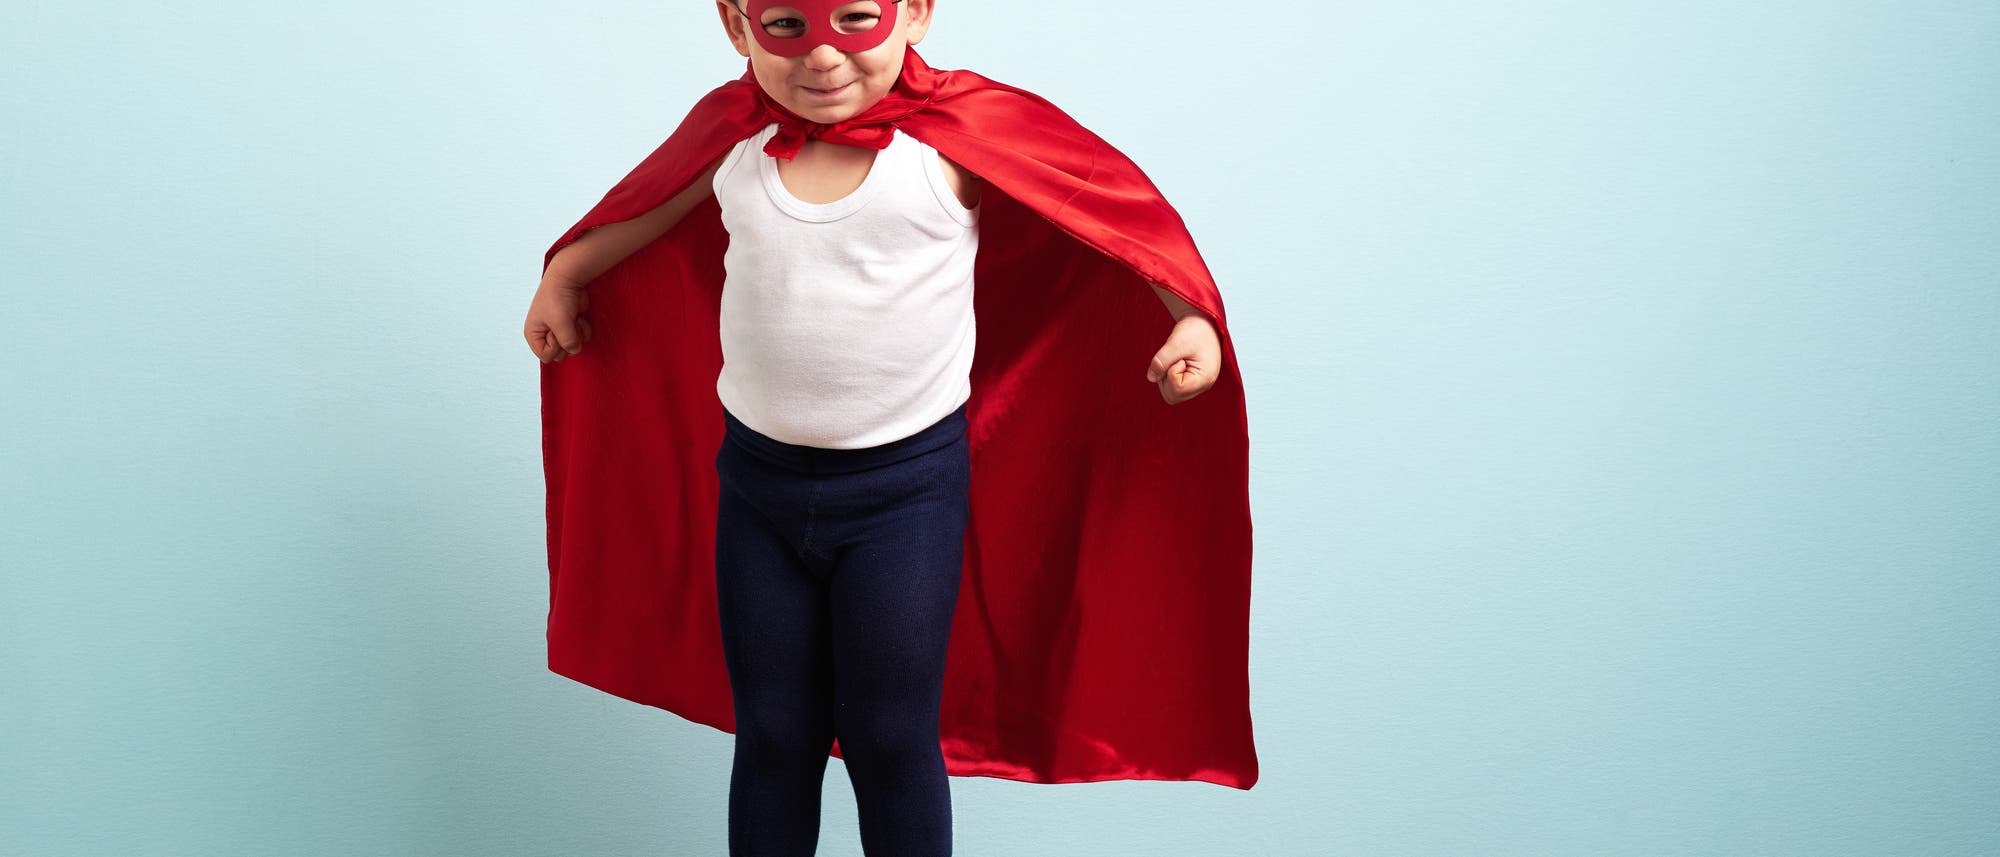 Ein Kind trägt eine Maske und ein rotes Cape. Es sieht aus wie ein Superheld.